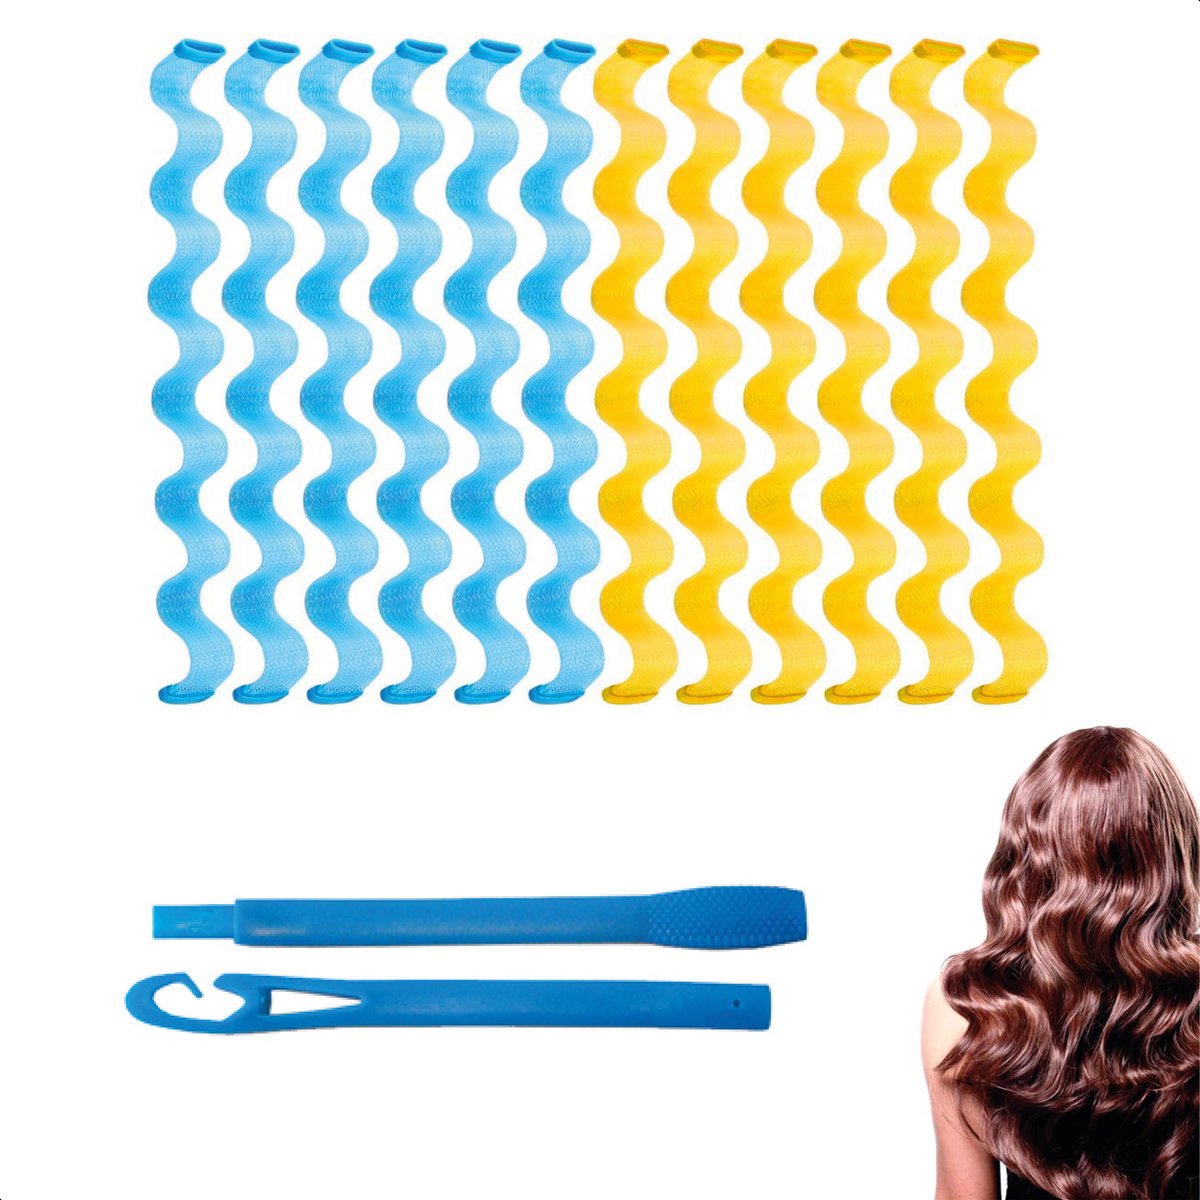 Heatless waves - 12 stuks - 30cm - Blauw & geel - Hair Curler - Haar rollers - Krullen Zonder Hitte - Krulspelden- Heatless curls